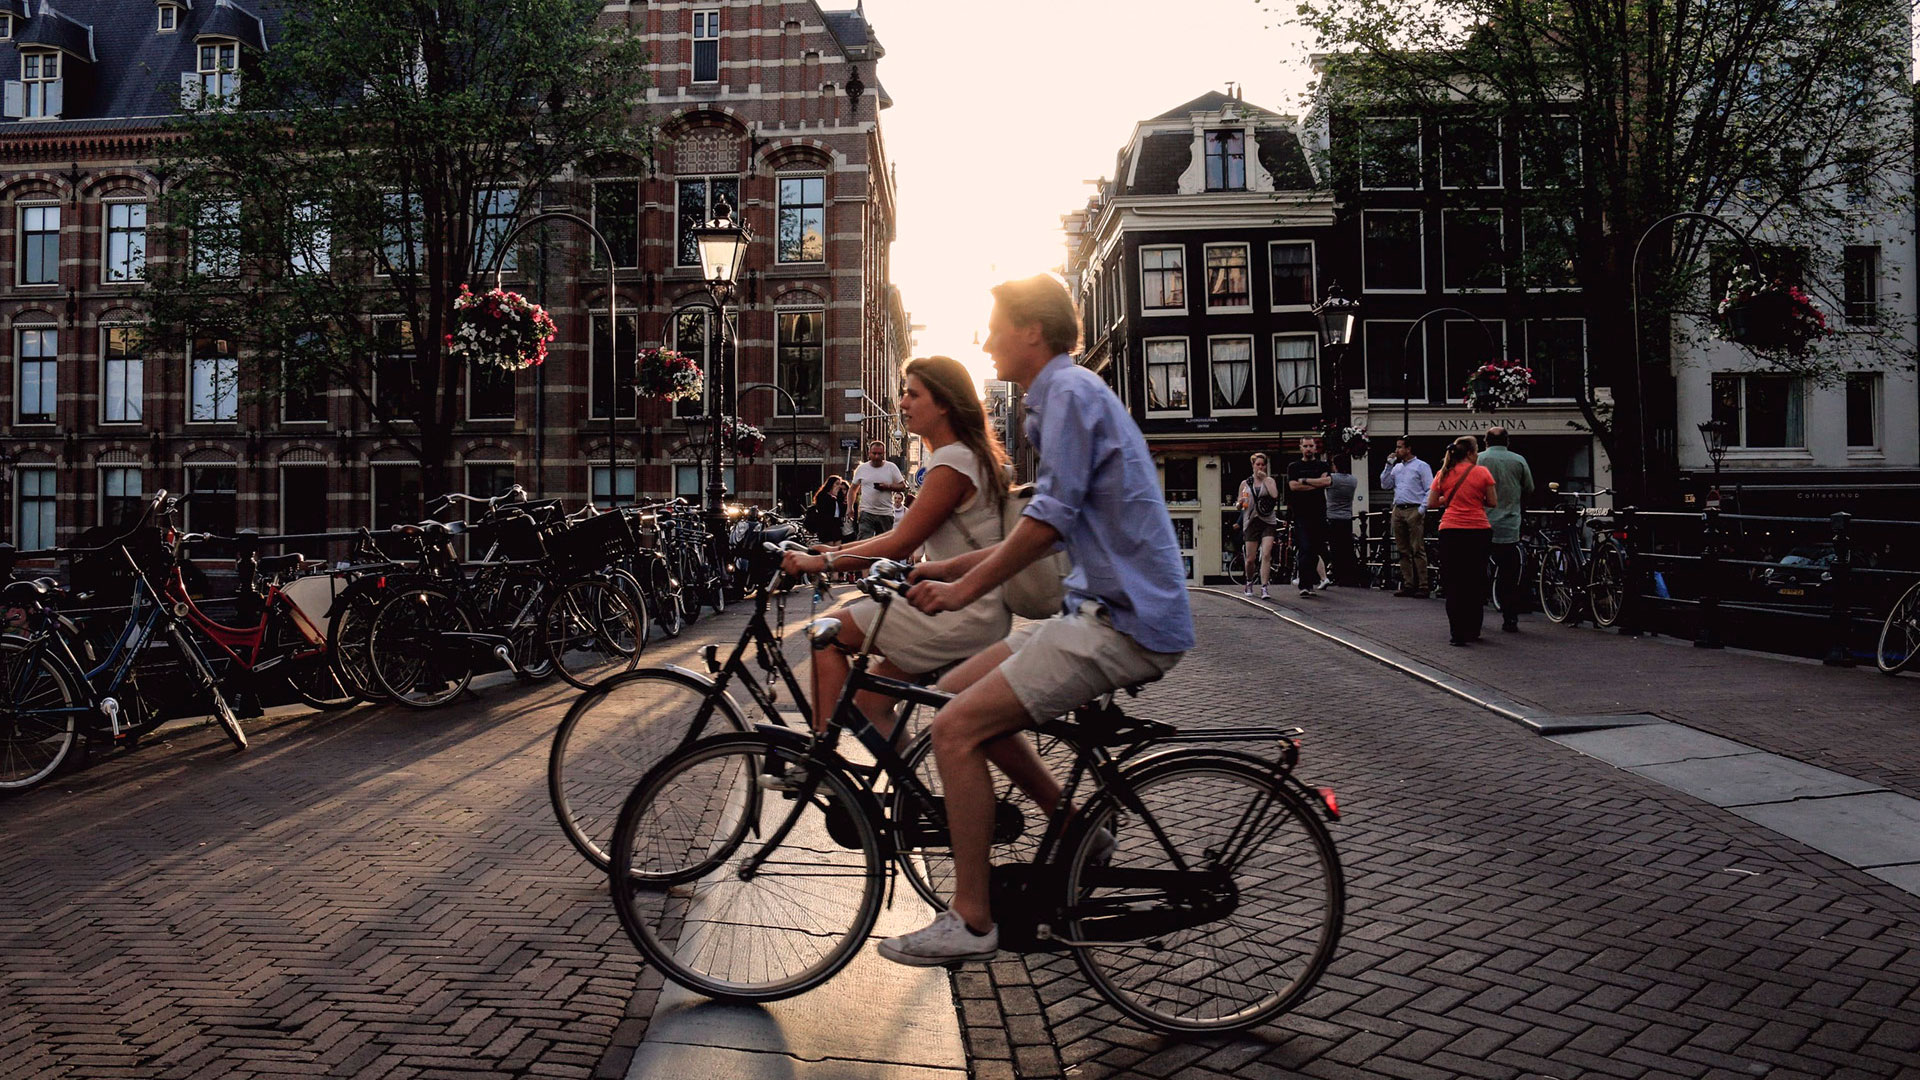 Alemania, Países Bajos y Francia, son los tres países donde las ventas de bicicletas aumentó exponencialmente en los últimos dos años